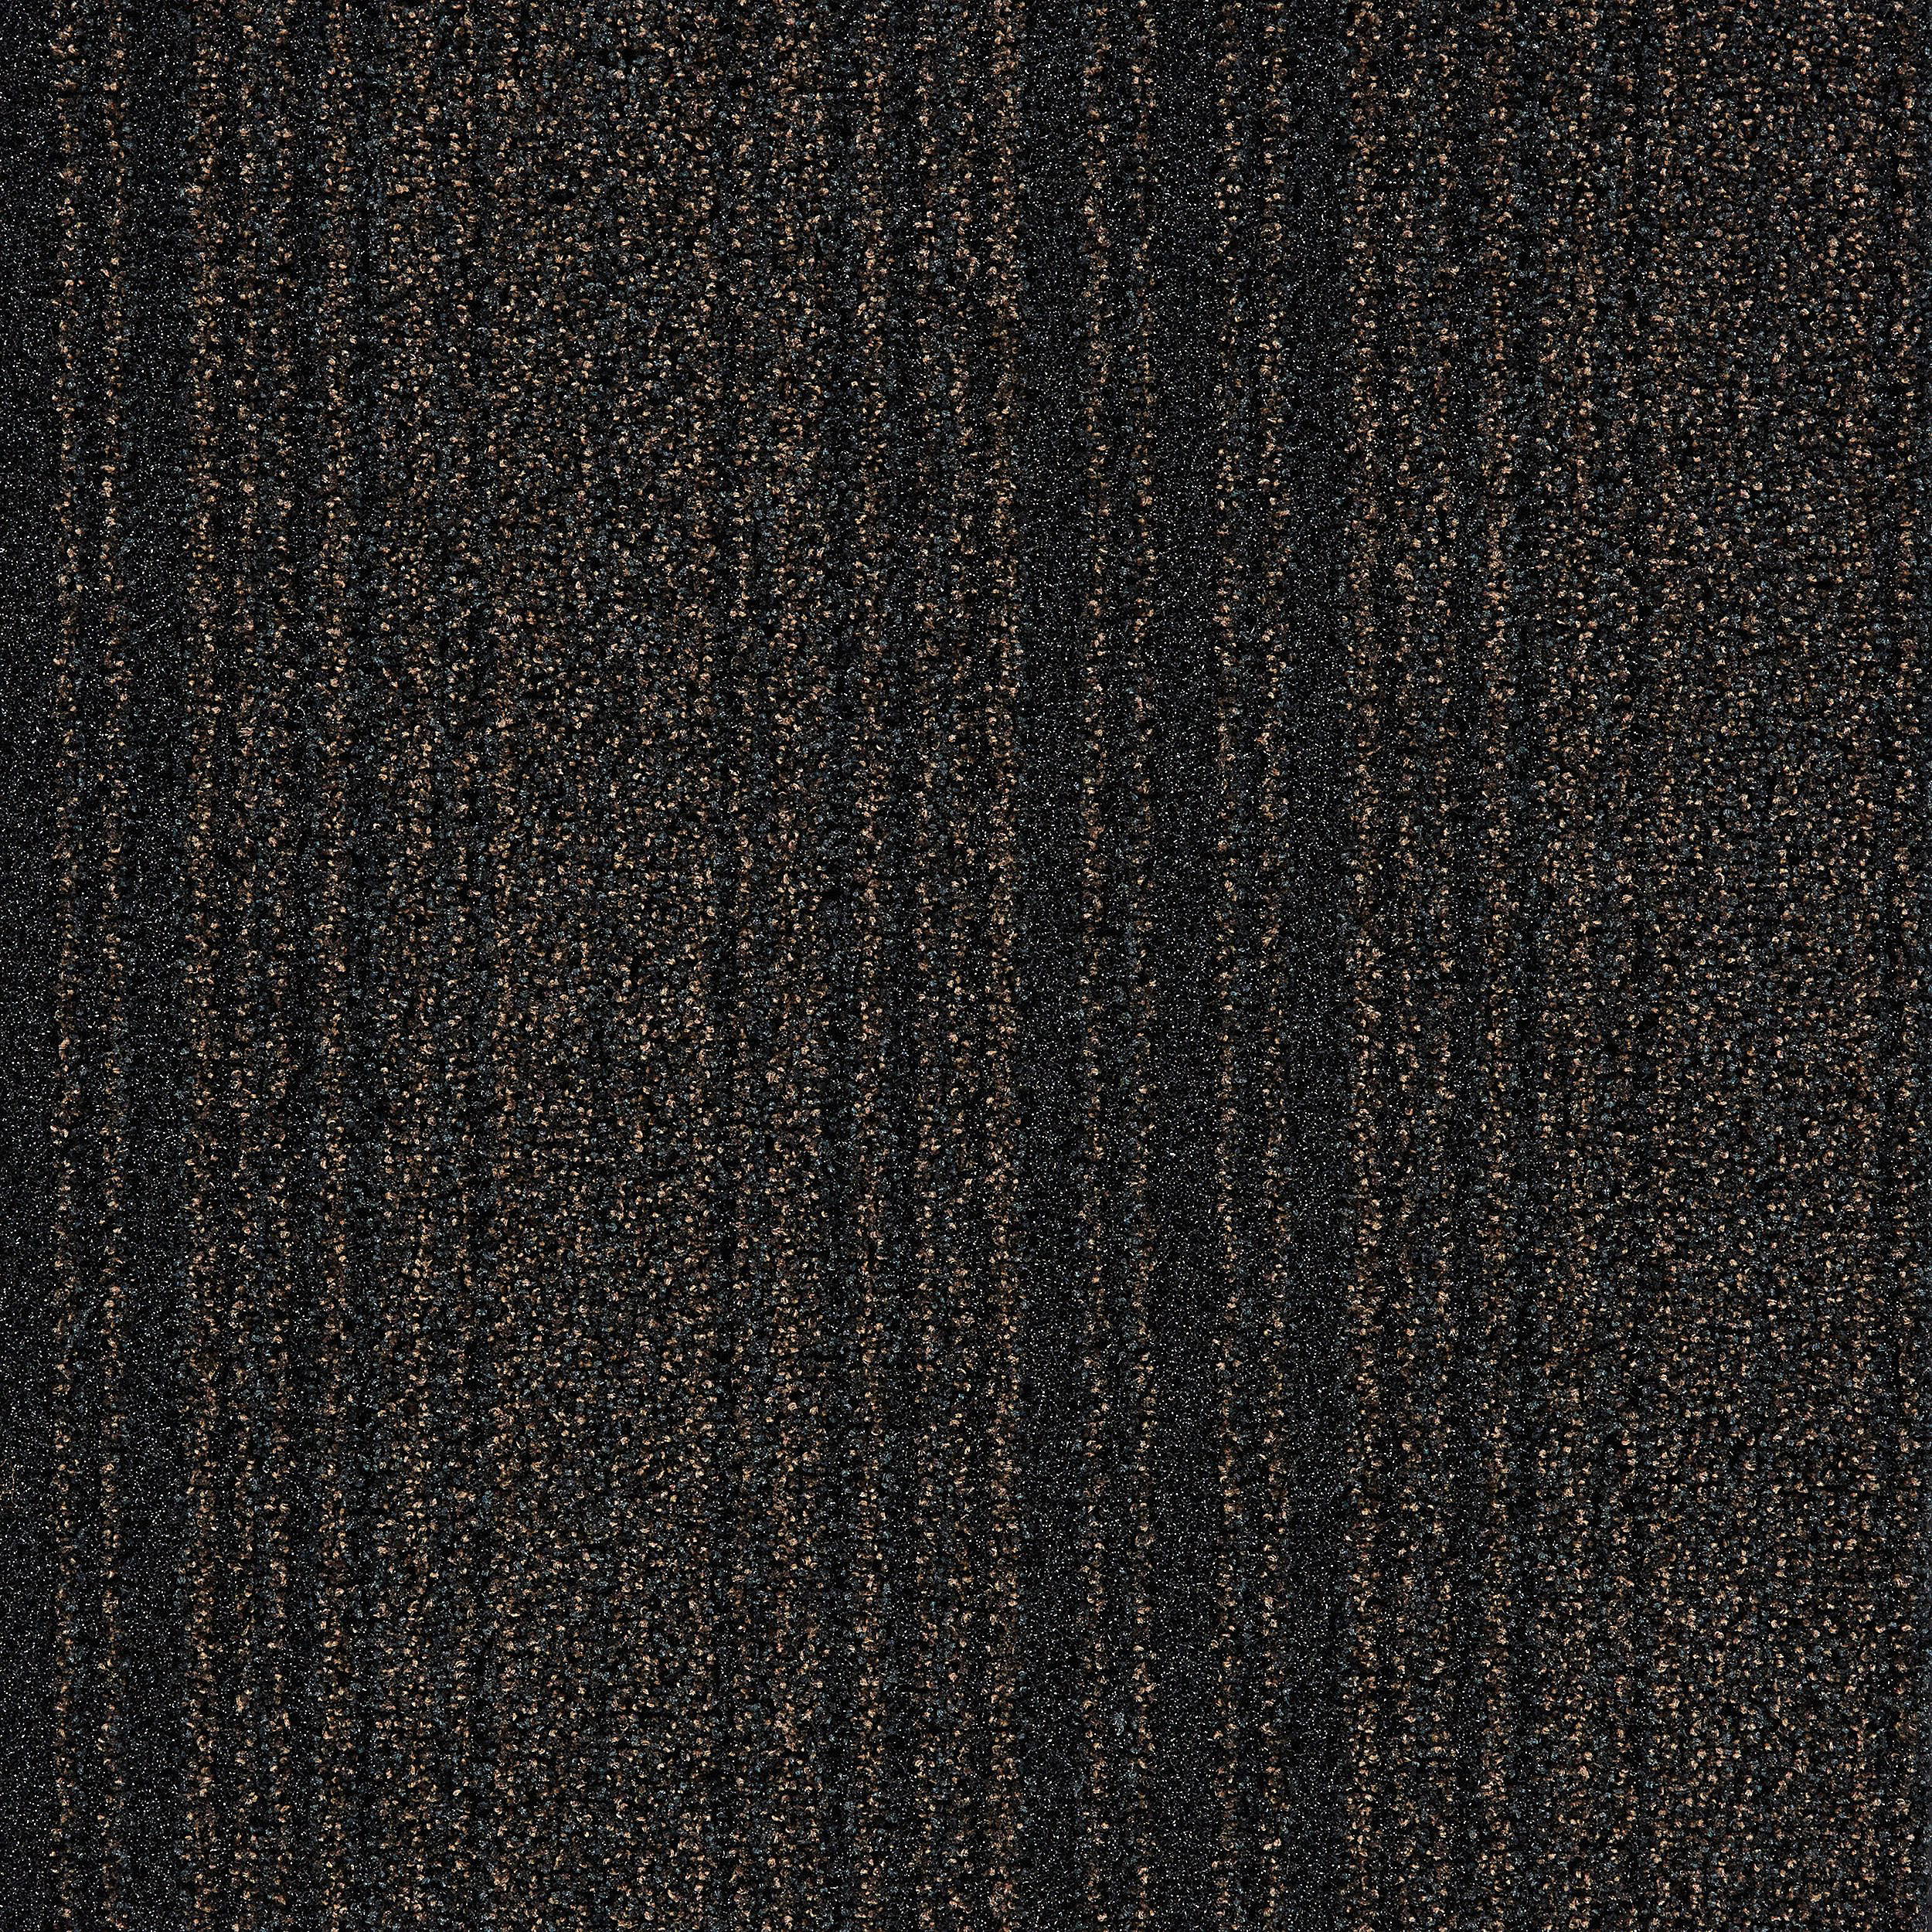 Barricade One Carpet Tile In Brown número de imagen 3